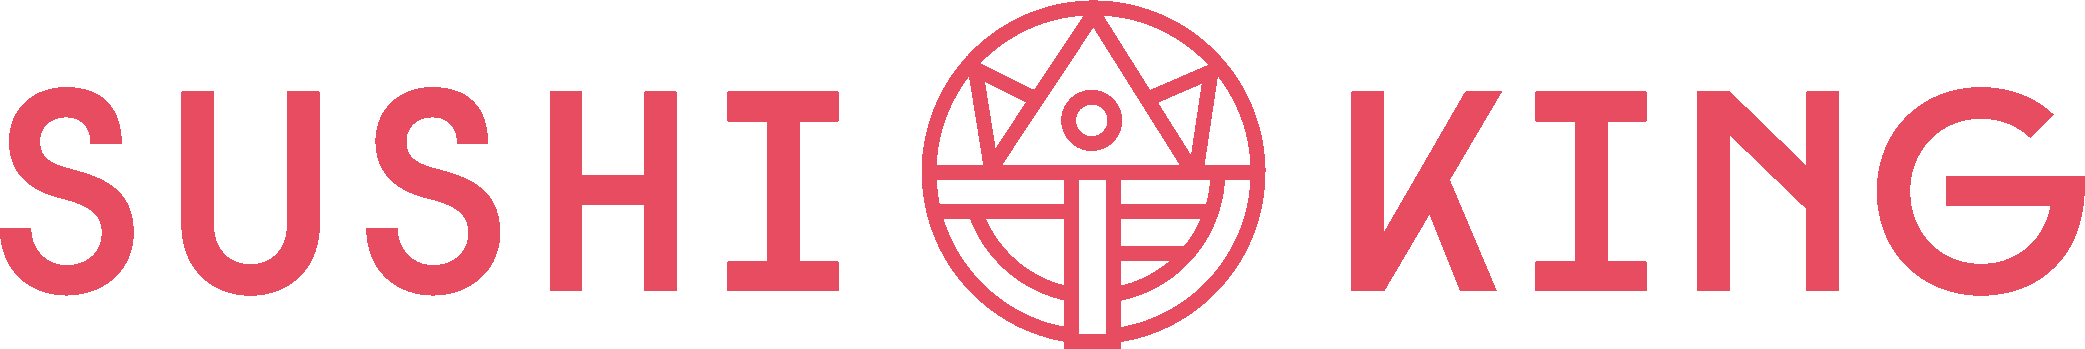 Image of SushiKing logotype